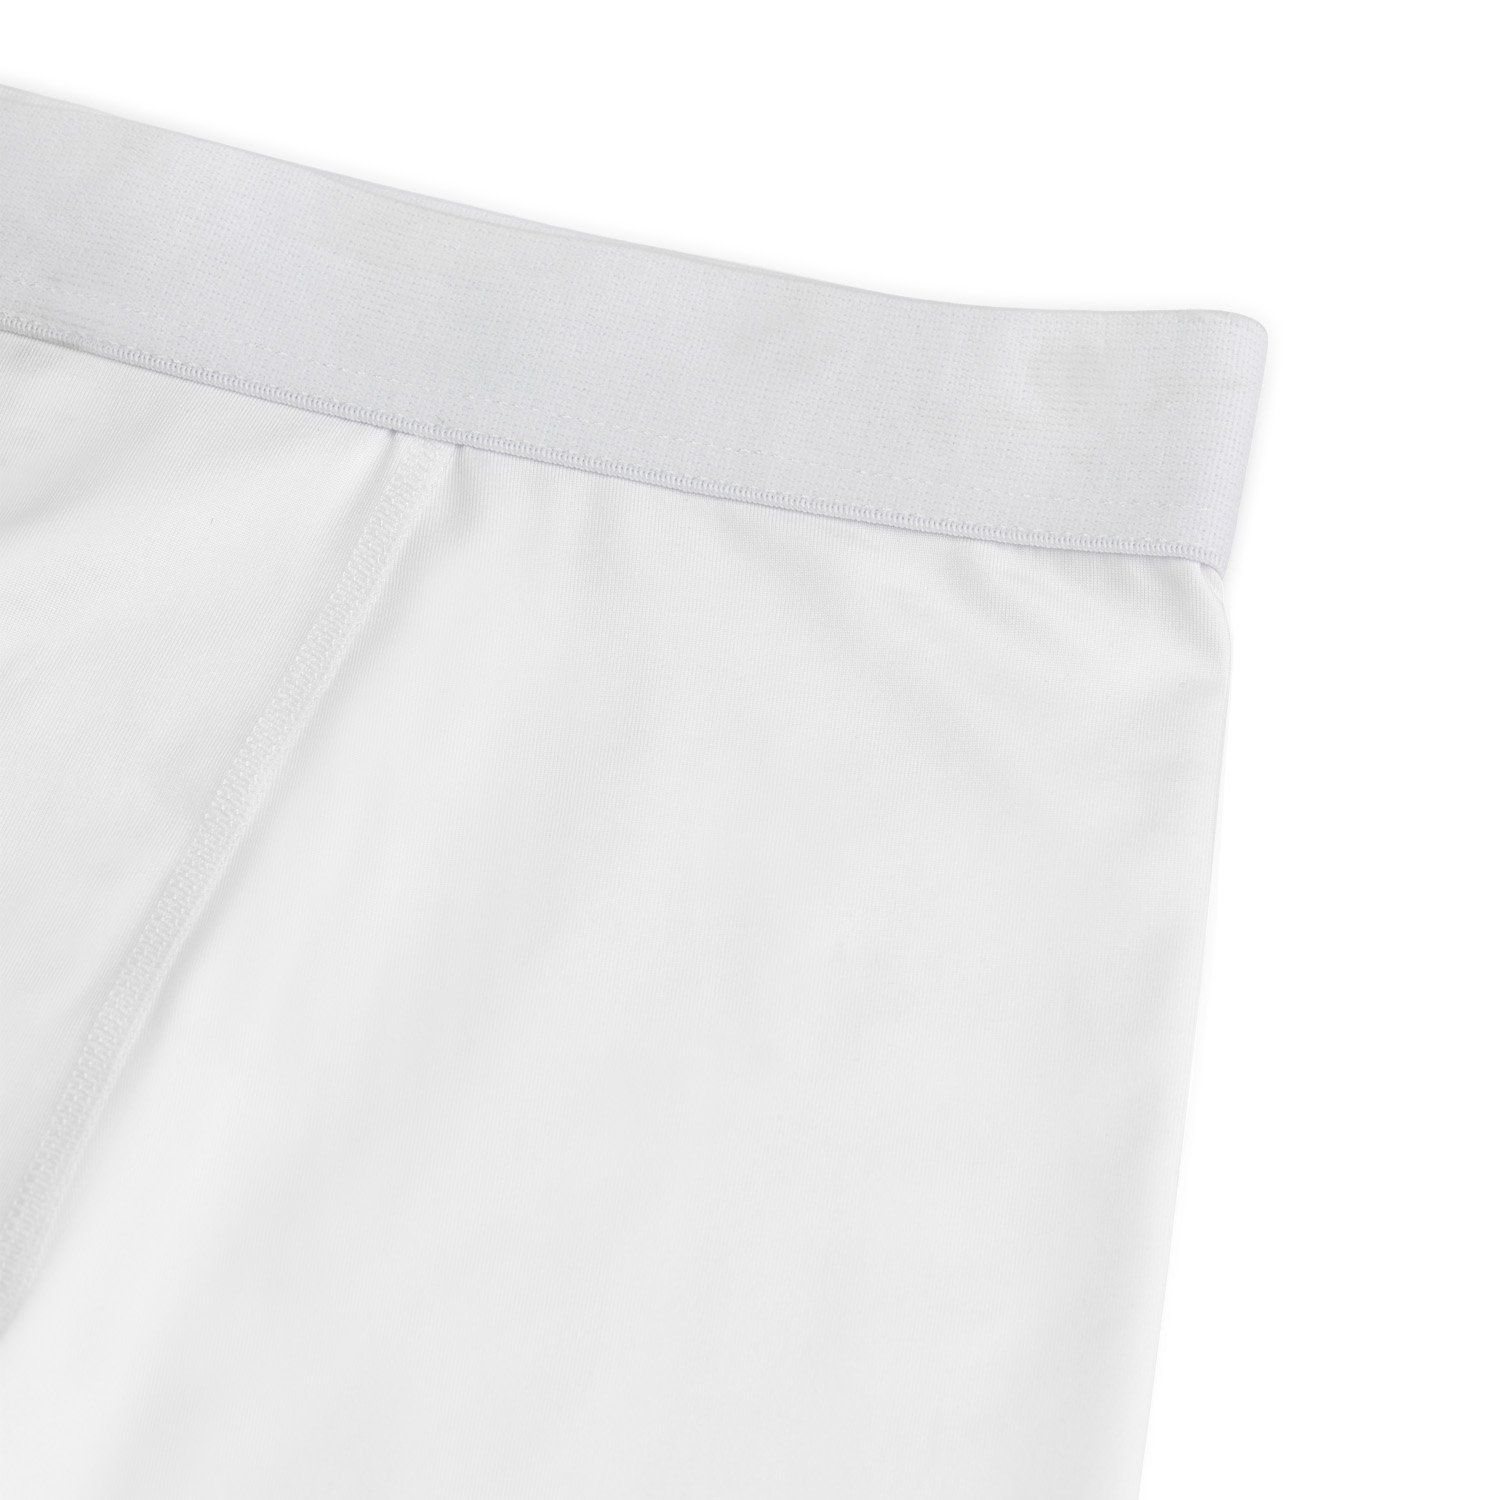 gladiator sports mens compression shorts white detail 